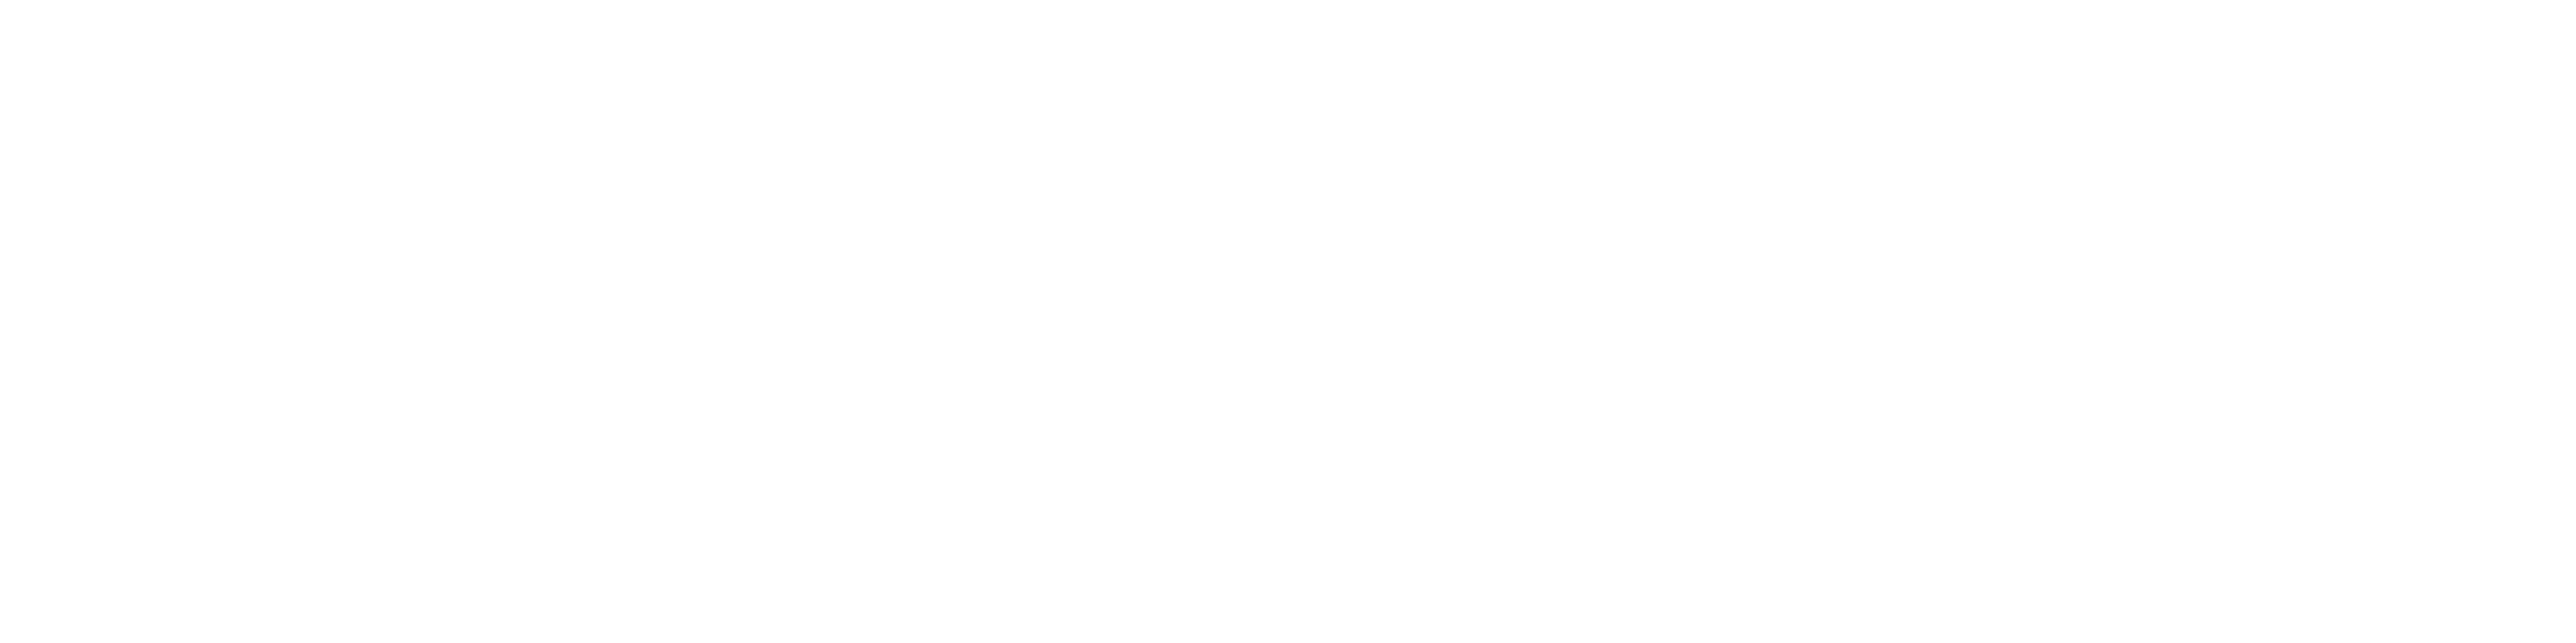 Angelo Antonio D'Agostino – Sito ufficiale